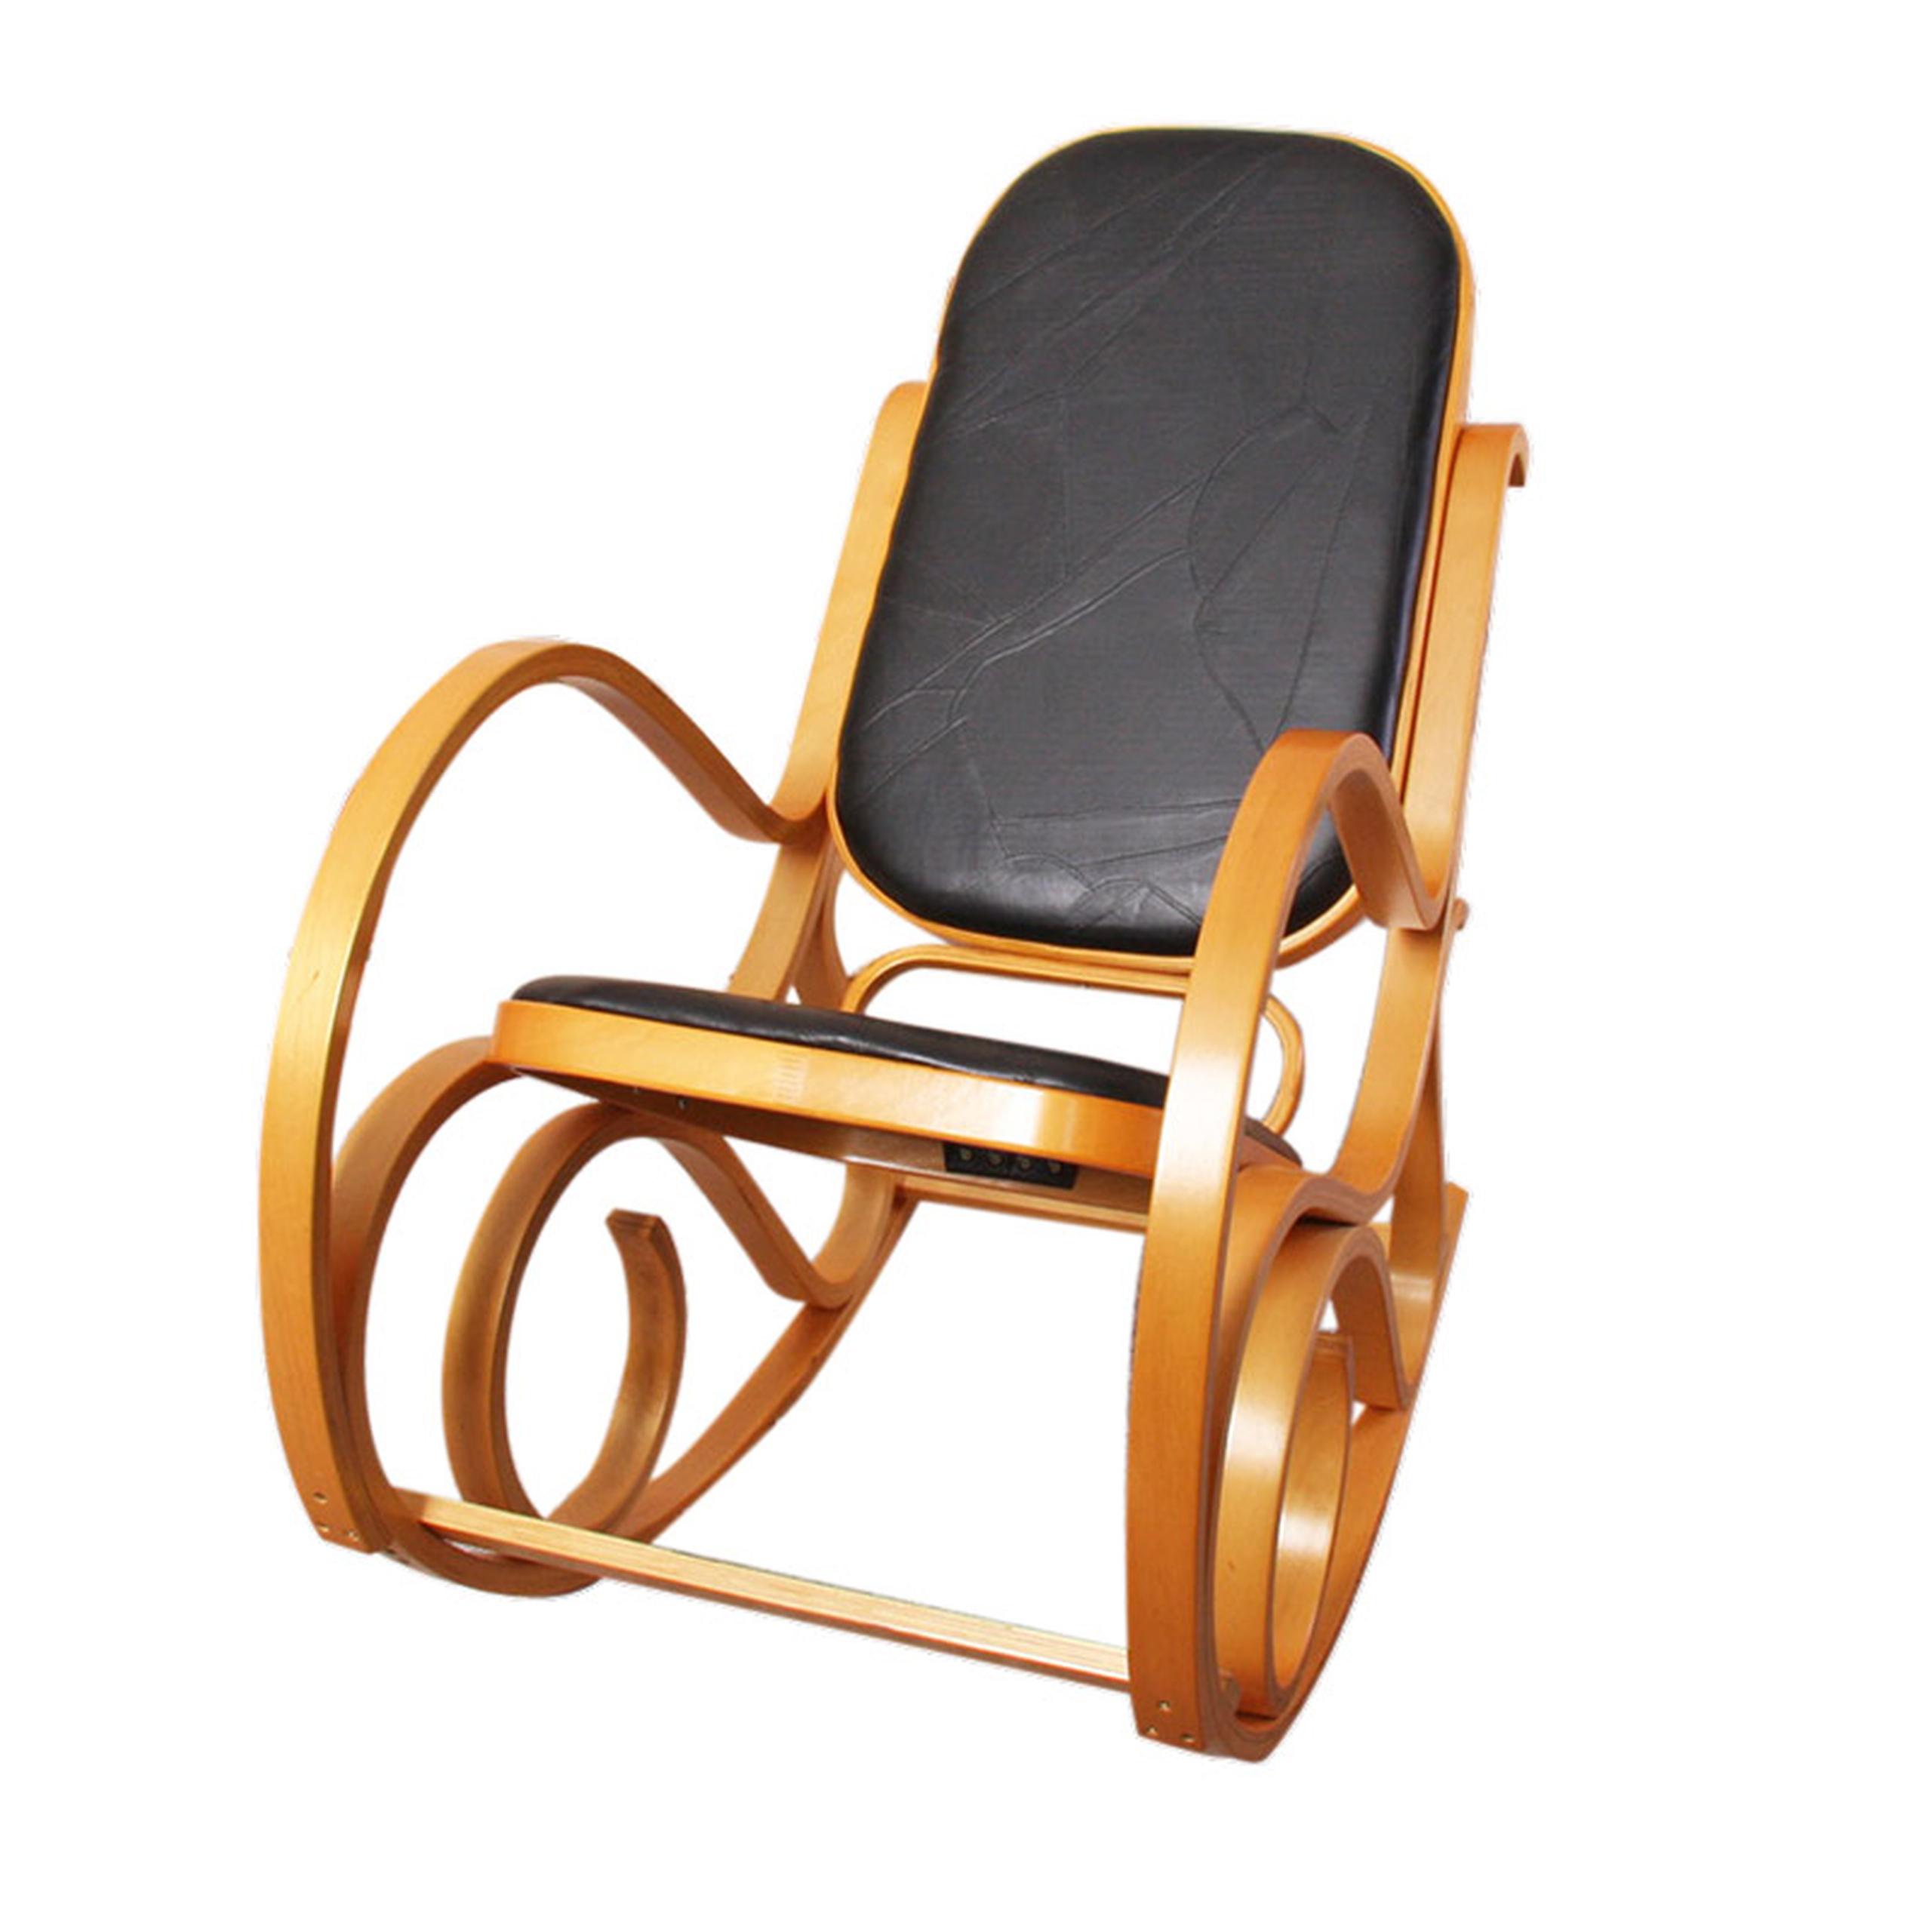 Rocking-chair/fauteuil à bascule M41, imitation bois de chêne/noyer, simili- cuir | eBay